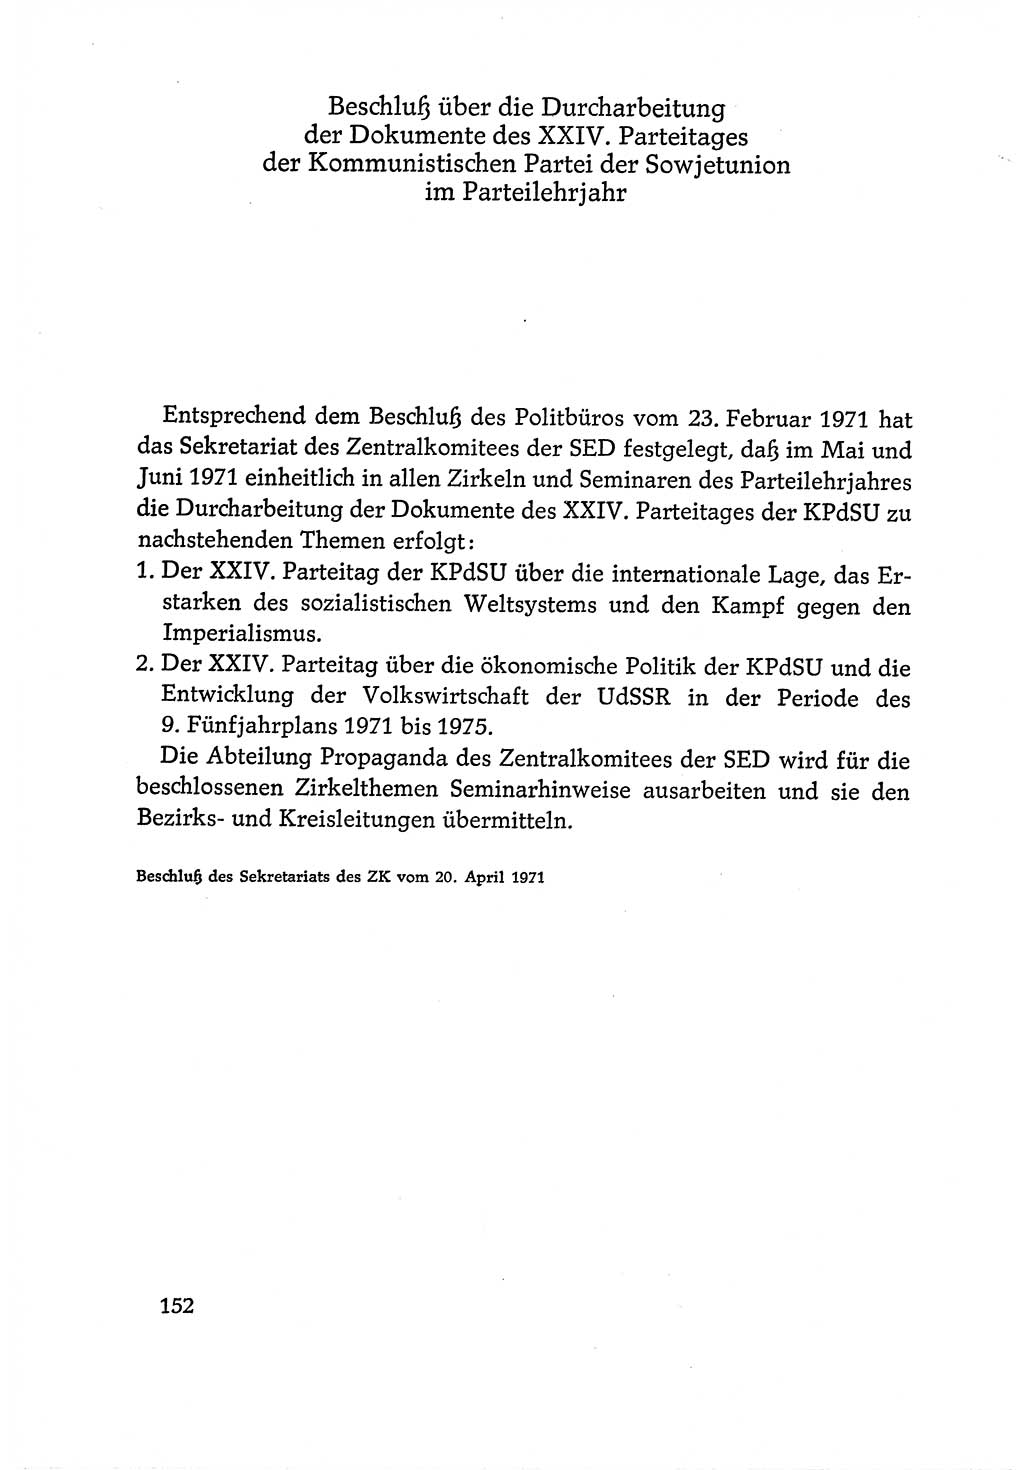 Dokumente der Sozialistischen Einheitspartei Deutschlands (SED) [Deutsche Demokratische Republik (DDR)] 1970-1971, Seite 152 (Dok. SED DDR 1970-1971, S. 152)